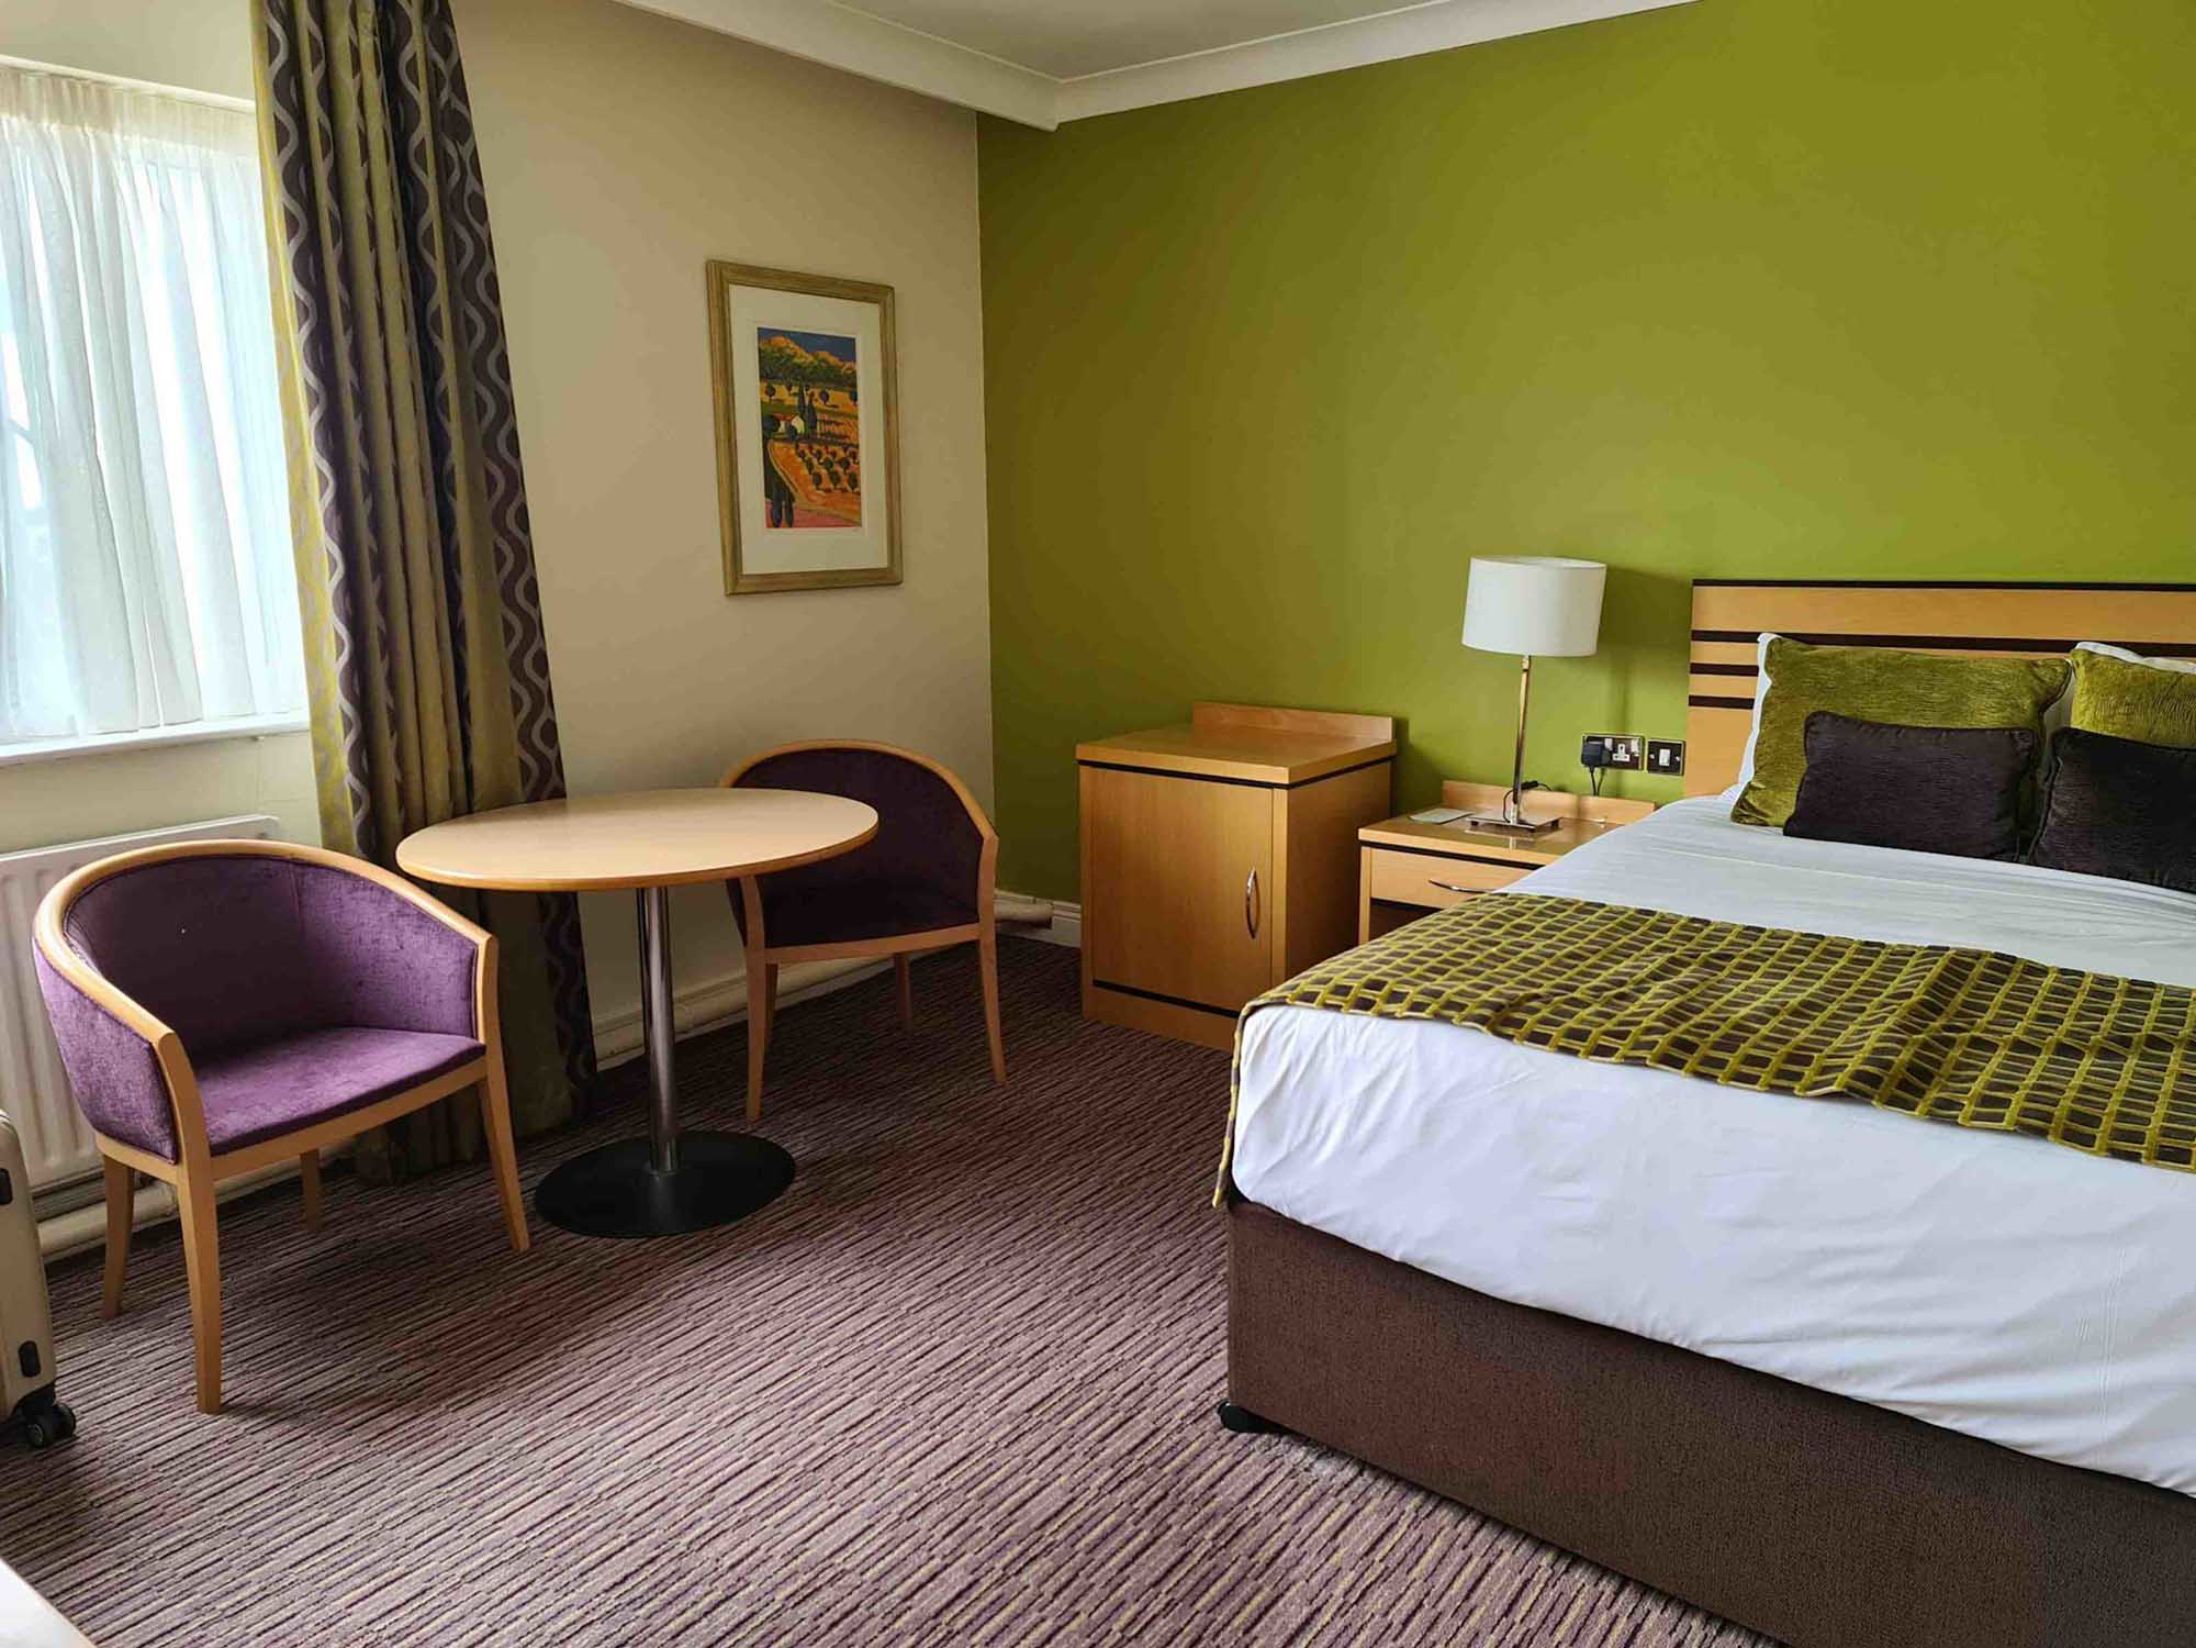 Best Hotels in Dublin - Hotel Riu Plaza The Gresham